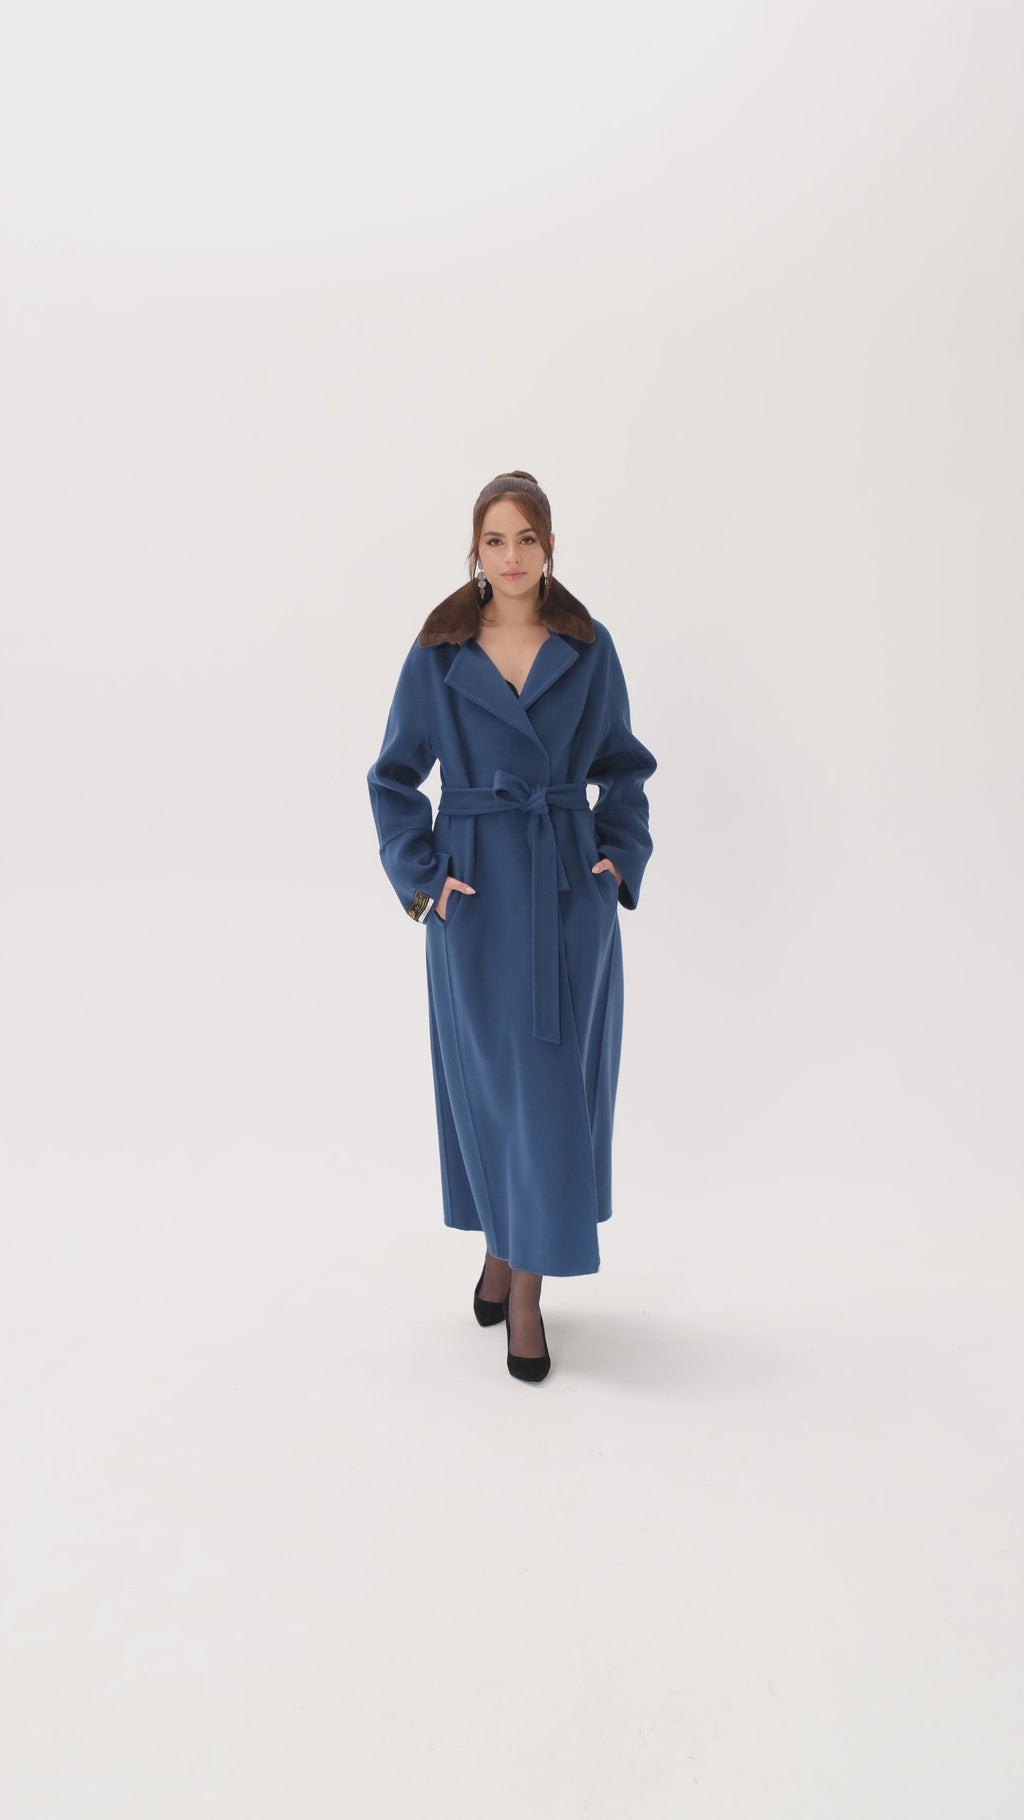 cashmere-blue-fur-coat